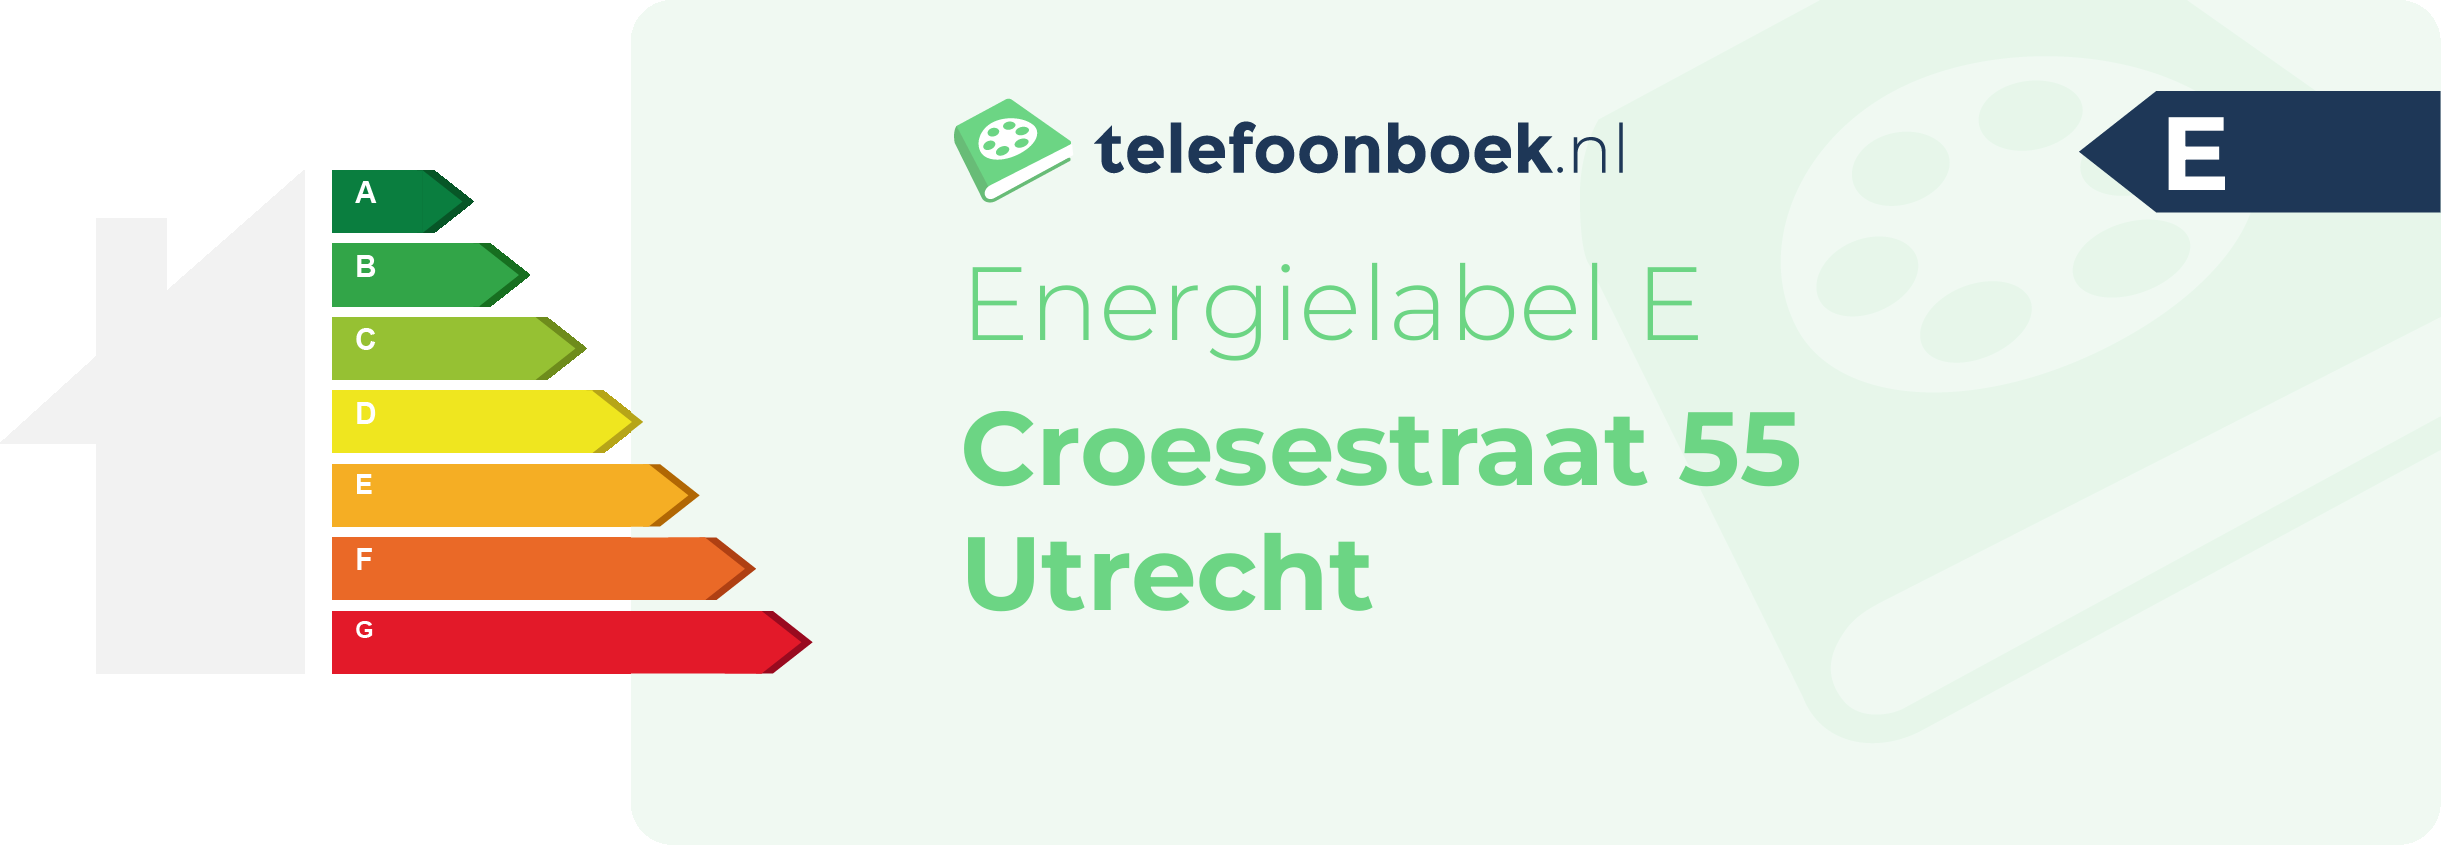 Energielabel Croesestraat 55 Utrecht